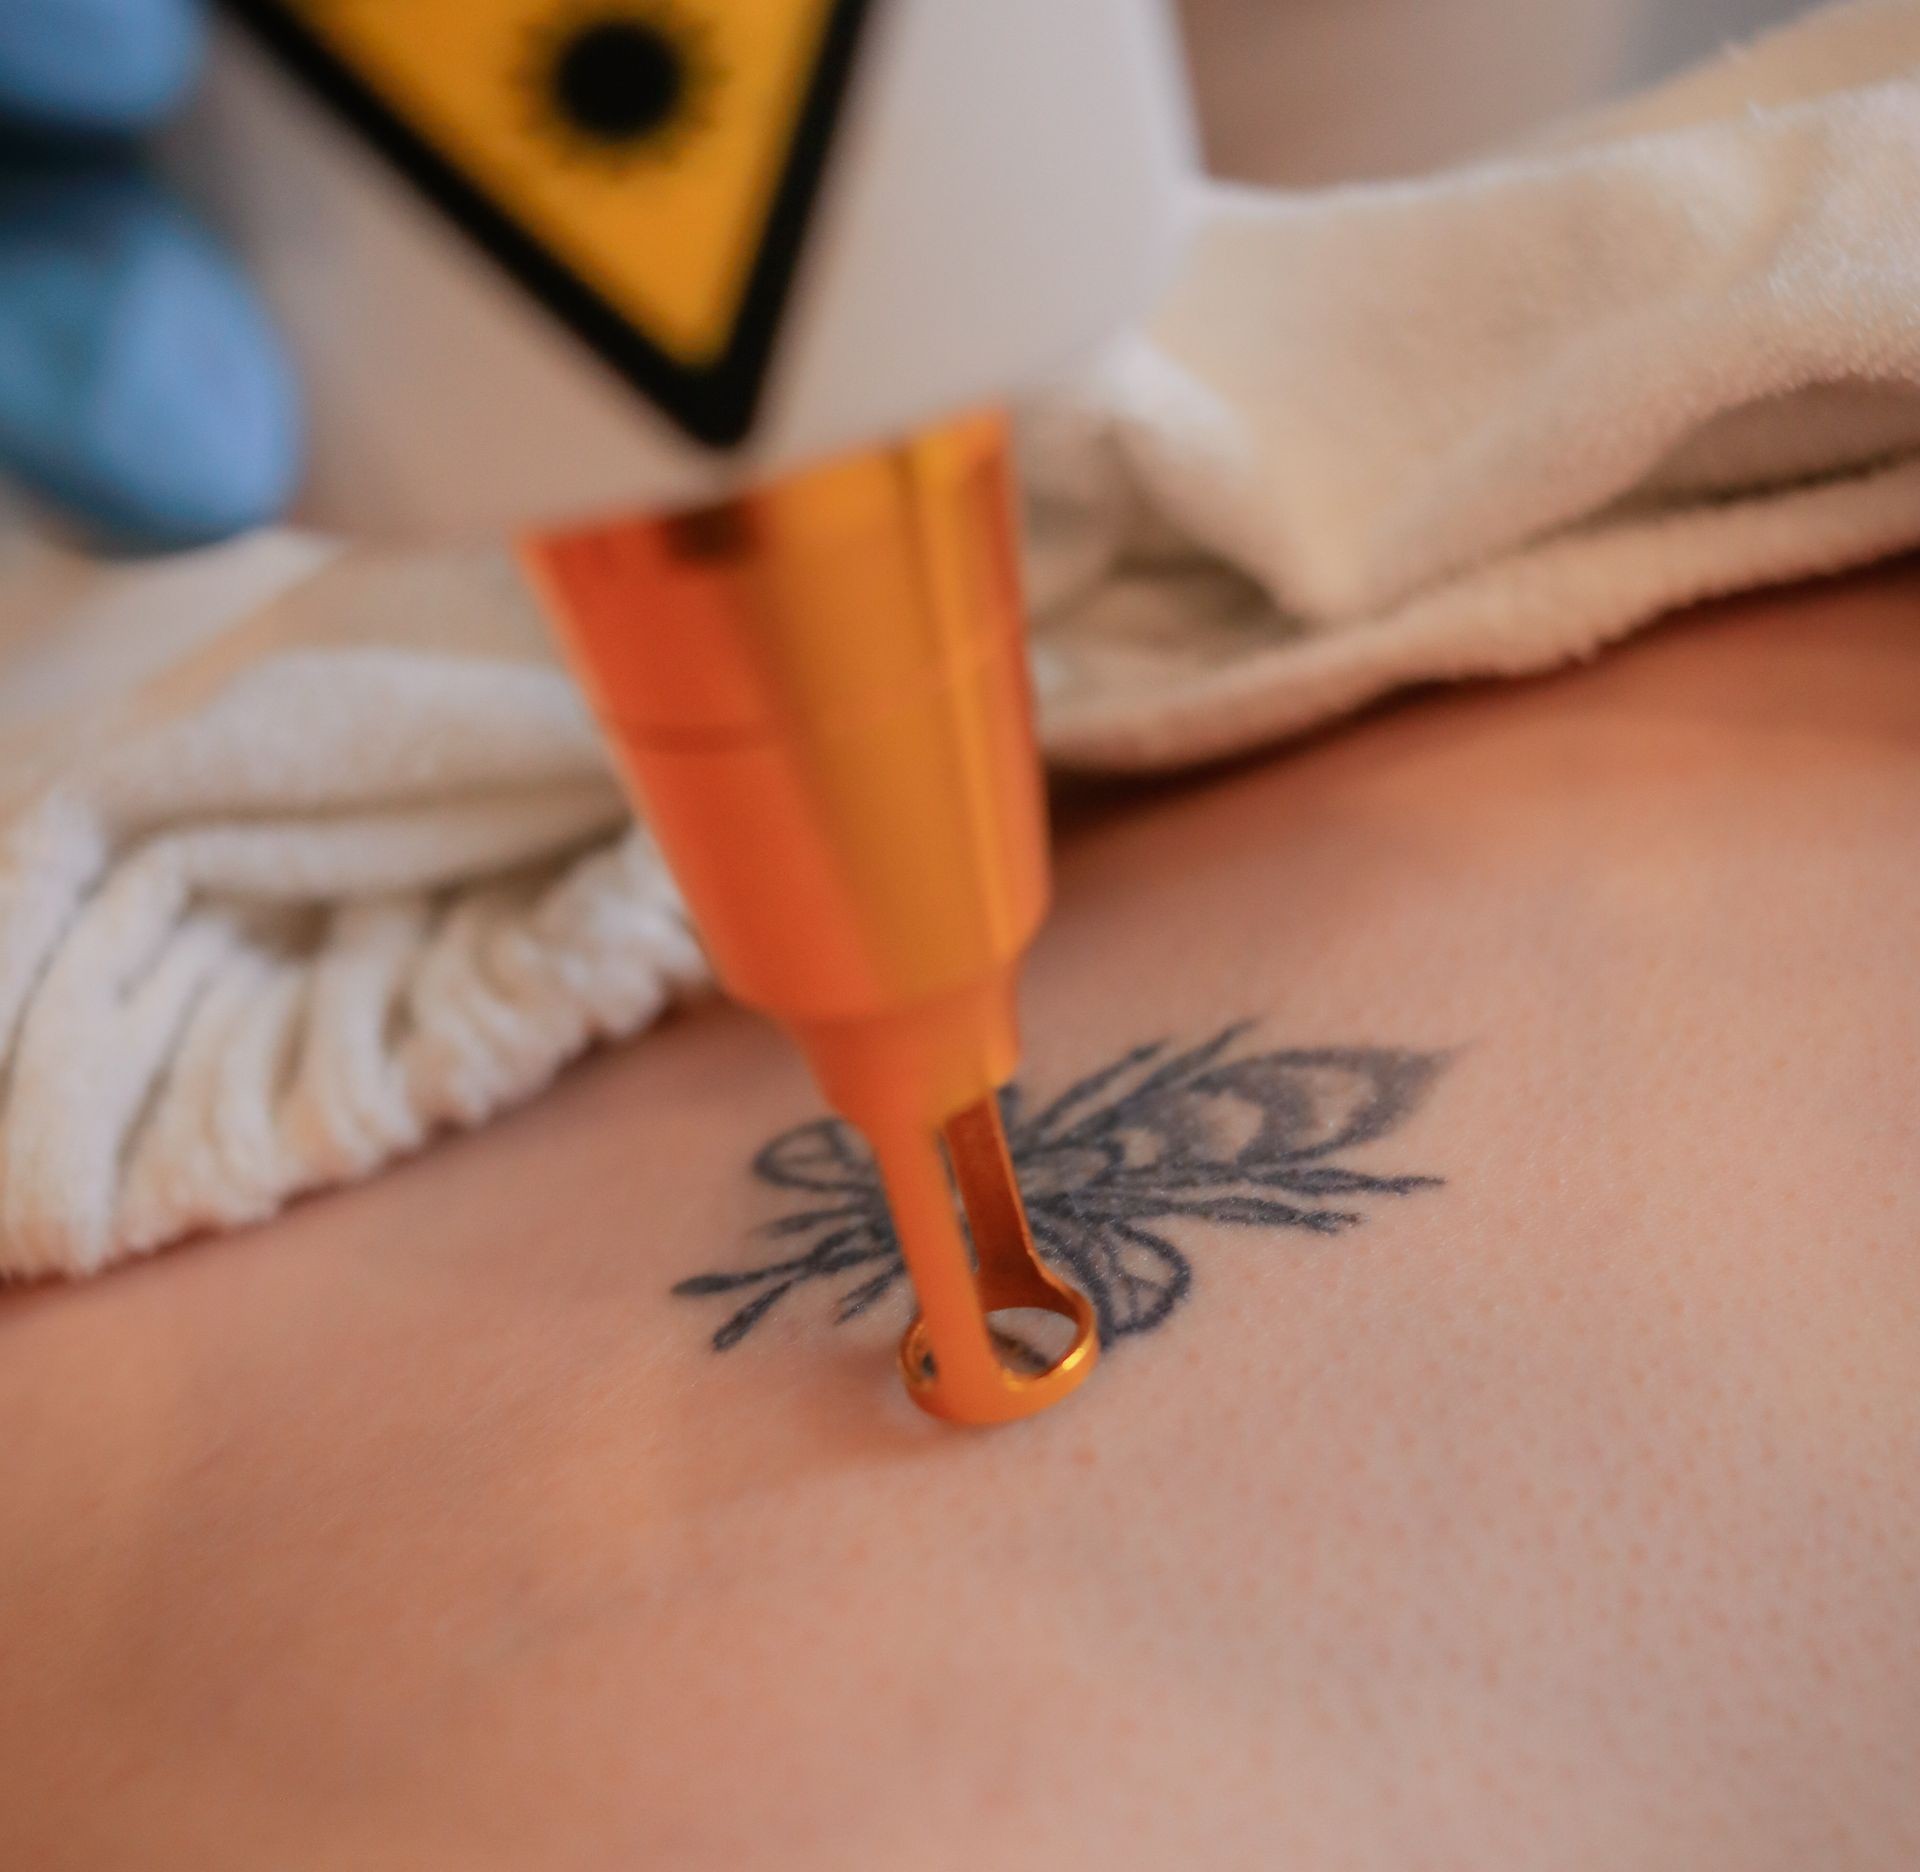 tatto removal process